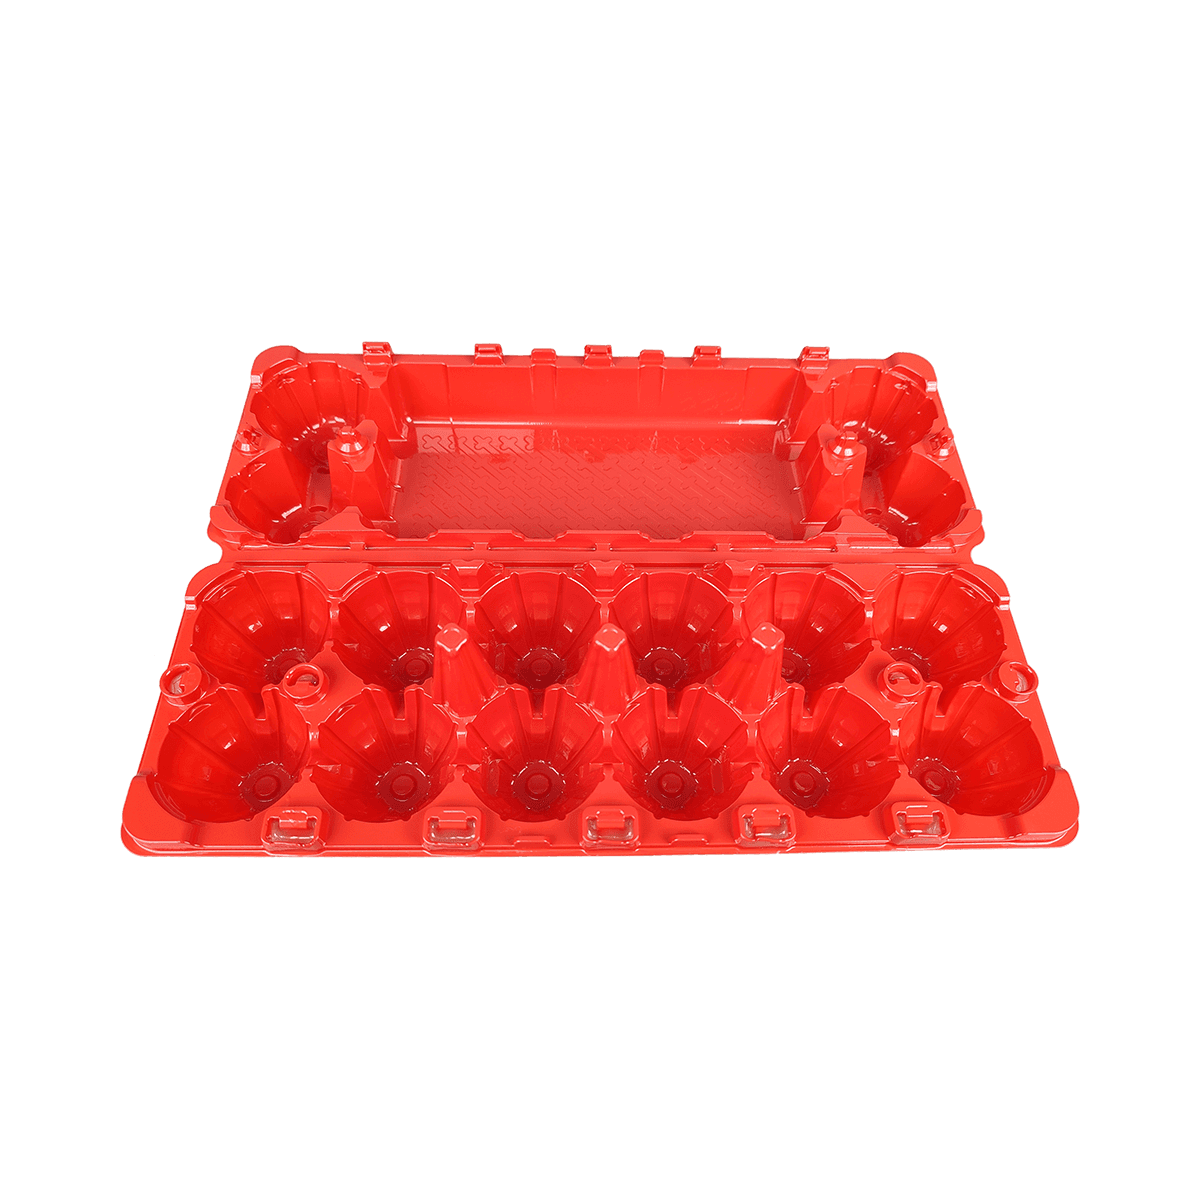 可重复使用的坚固设计哑光红PET 12鸡蛋盒，适用于家庭农场市场冰箱